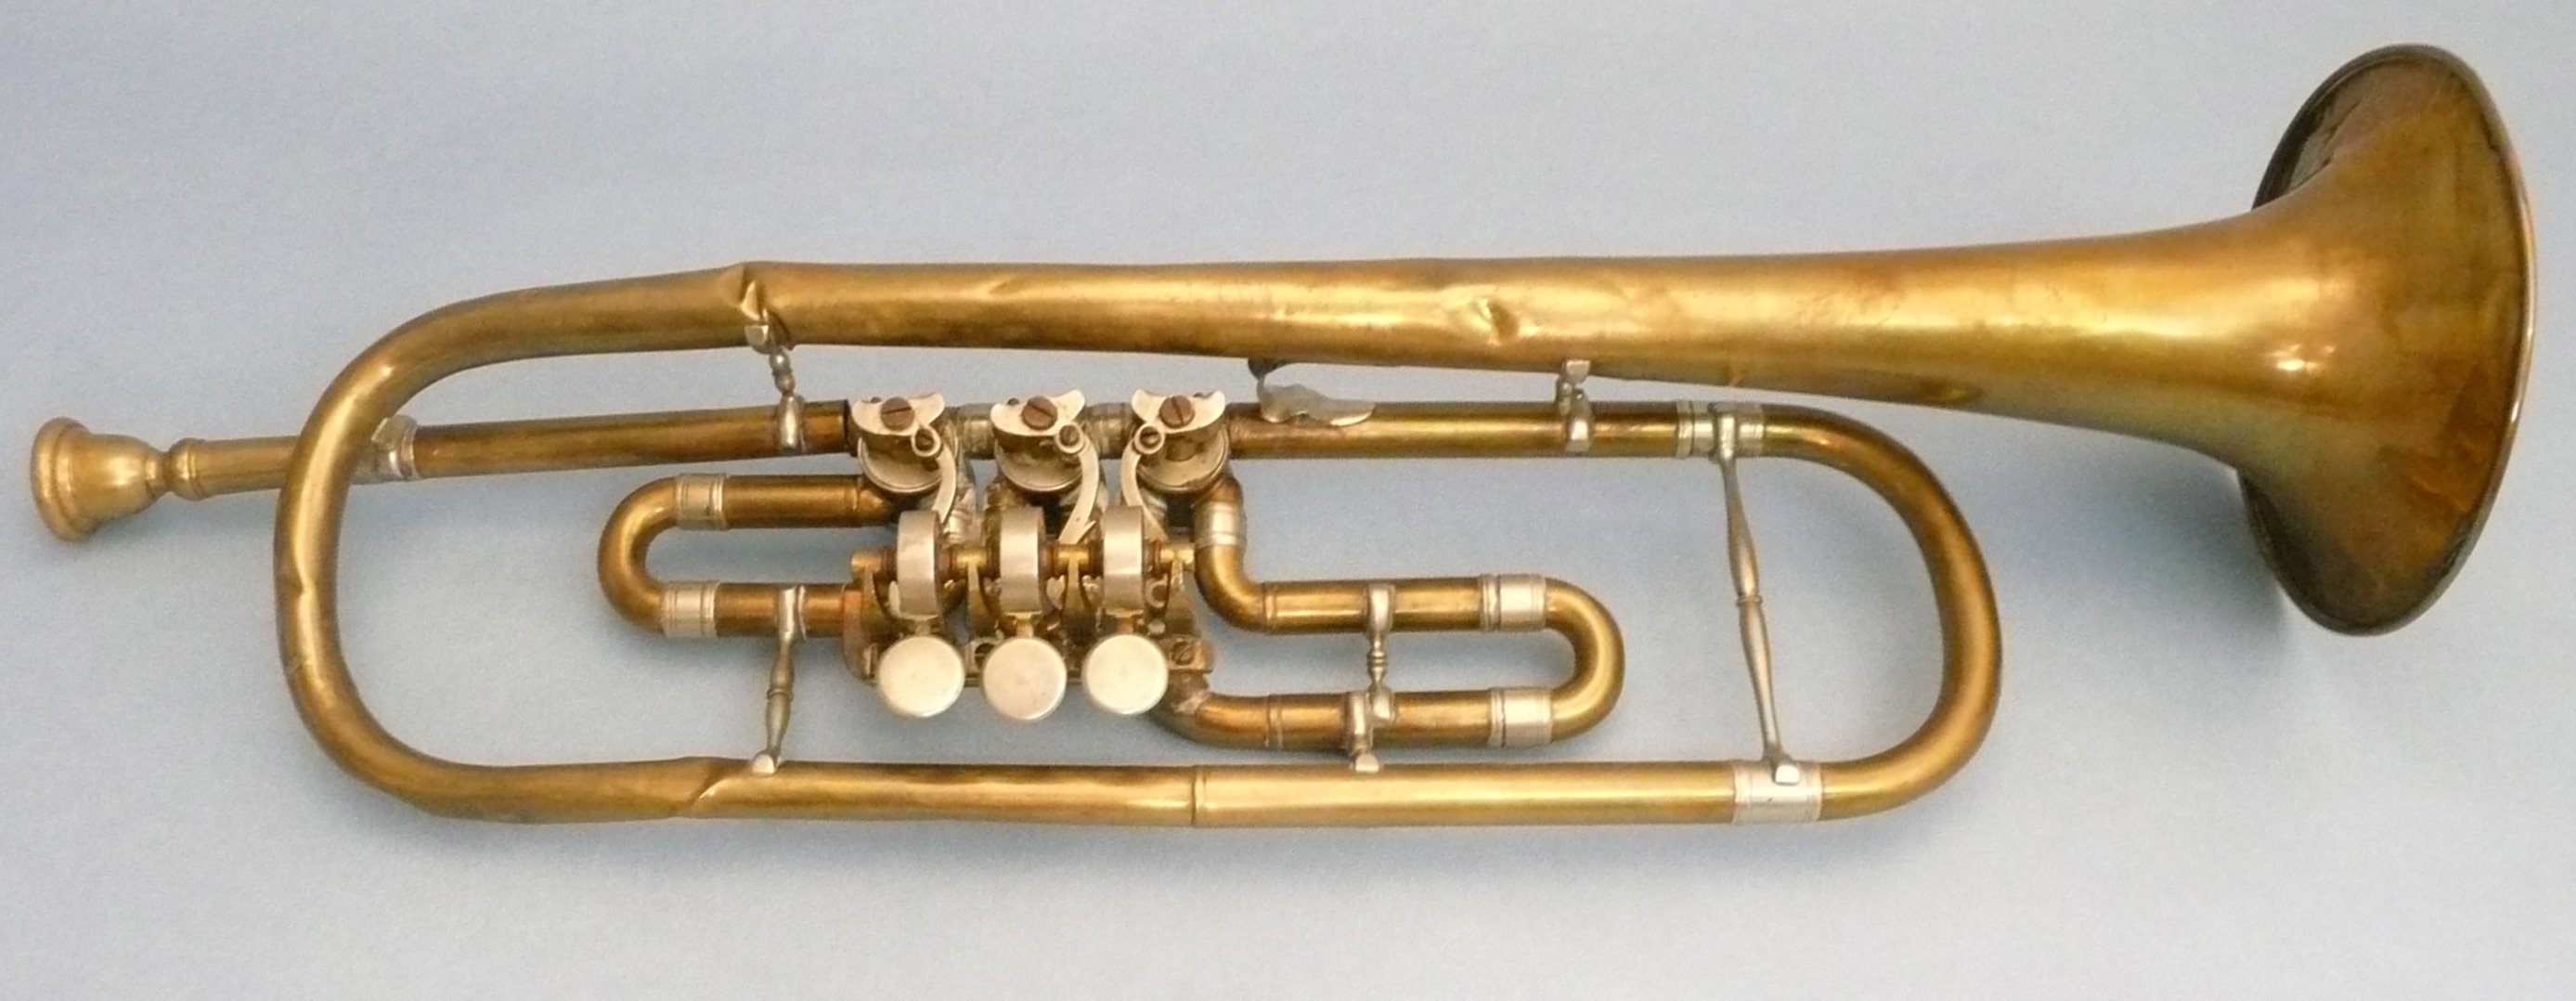 Trompete, 19. Jh. (Mindener Museum RR-R)